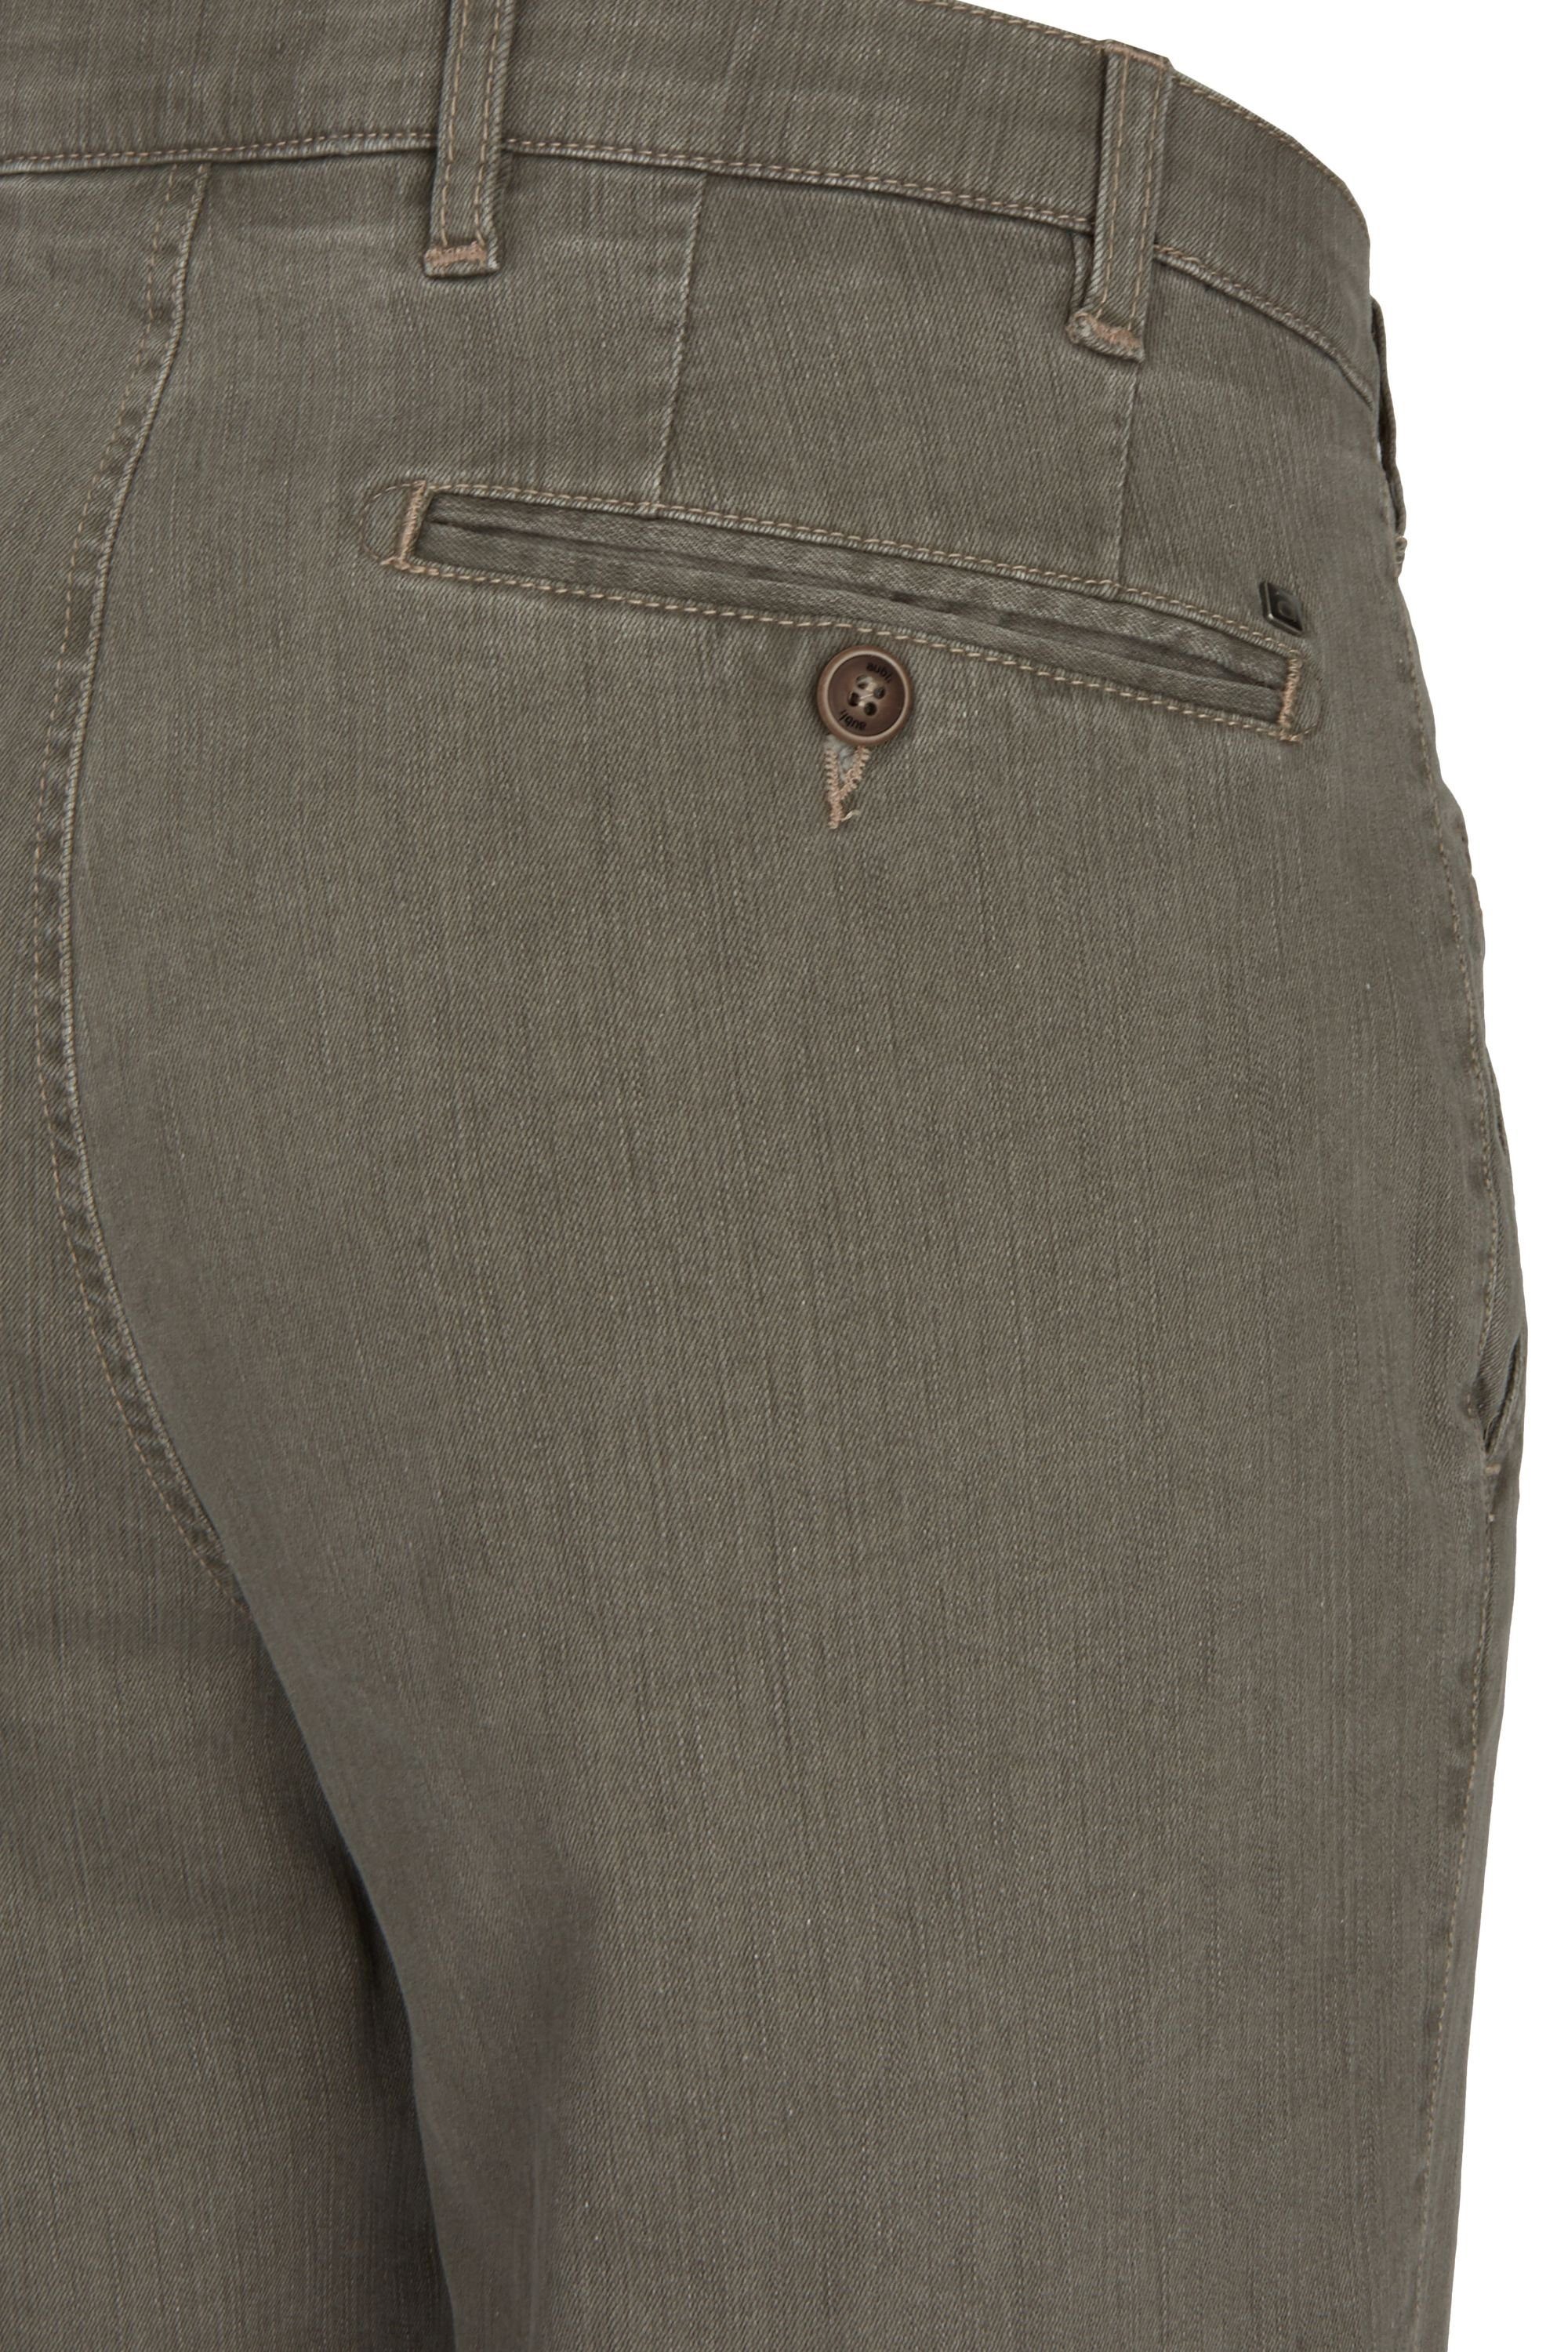 (24) Sommer High Bequeme aus Jeans Perfect Hose Modell aubi olive Stretch Flex Jeans aubi: Baumwolle Herren 526 Fit